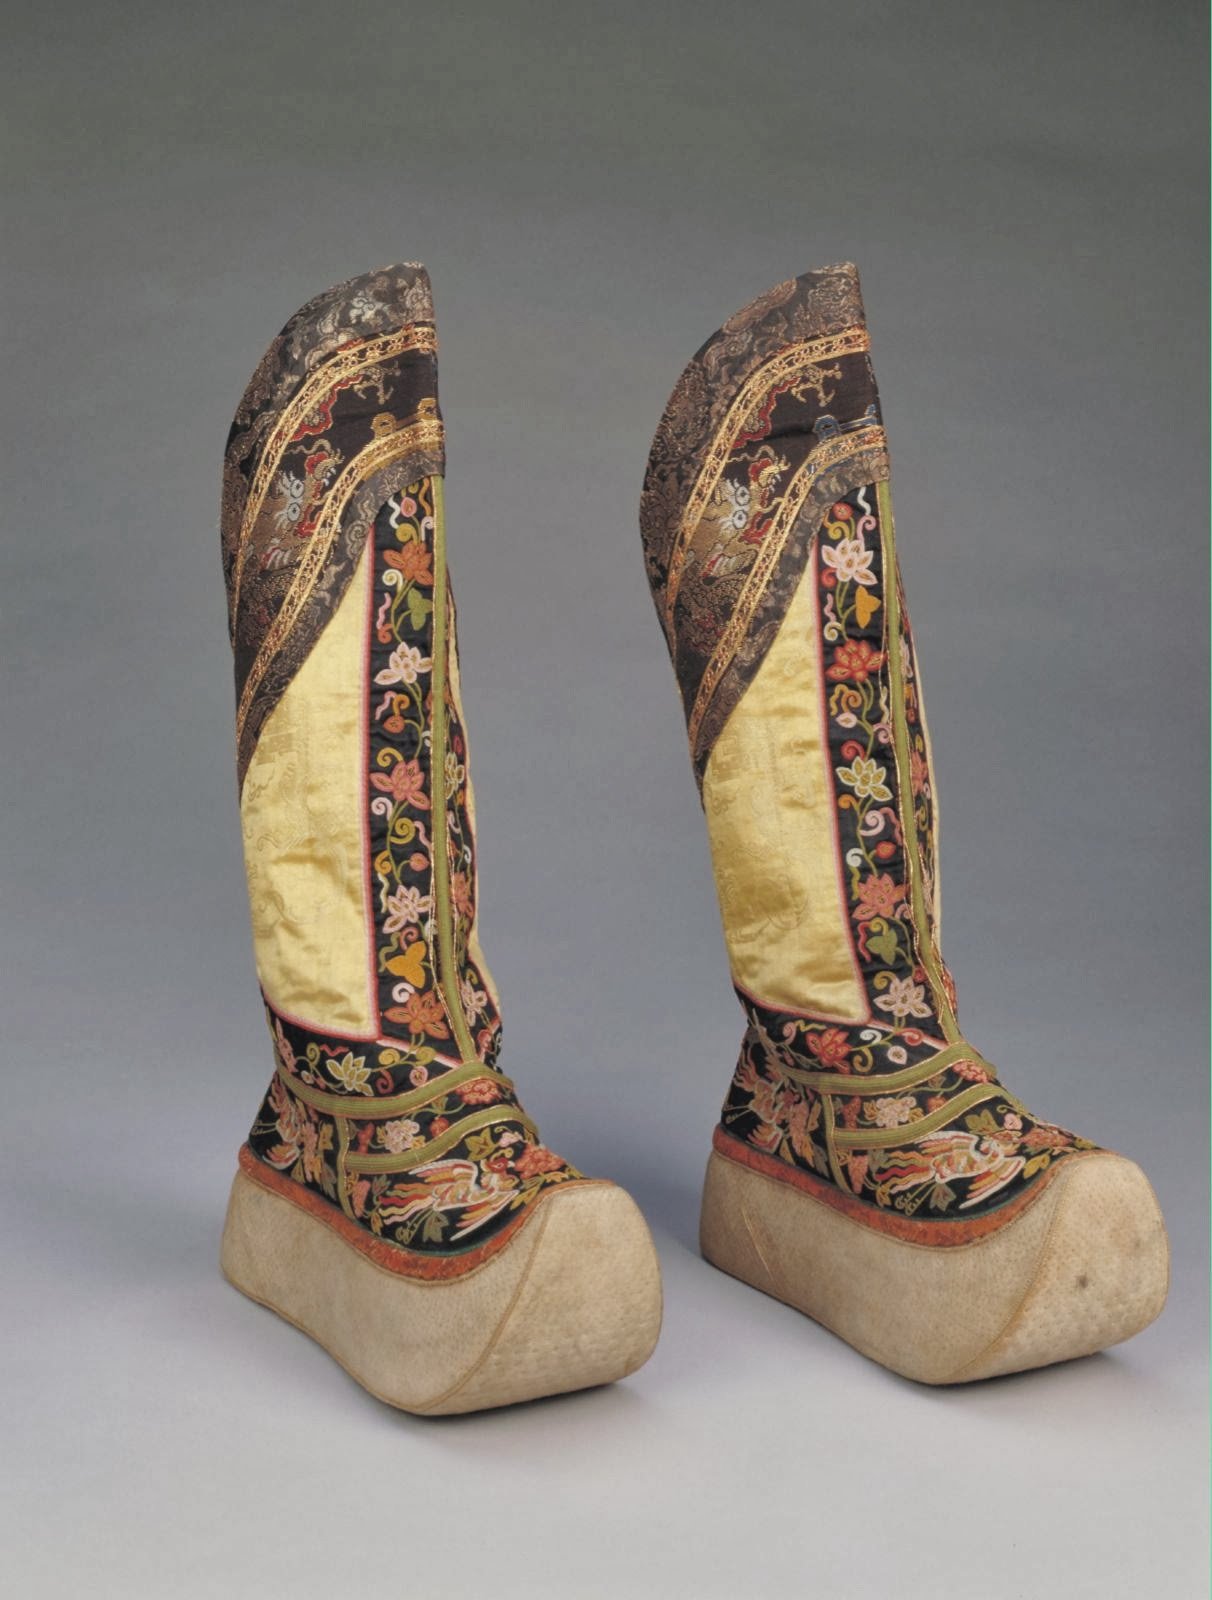 Обувь китайской династии Цинь